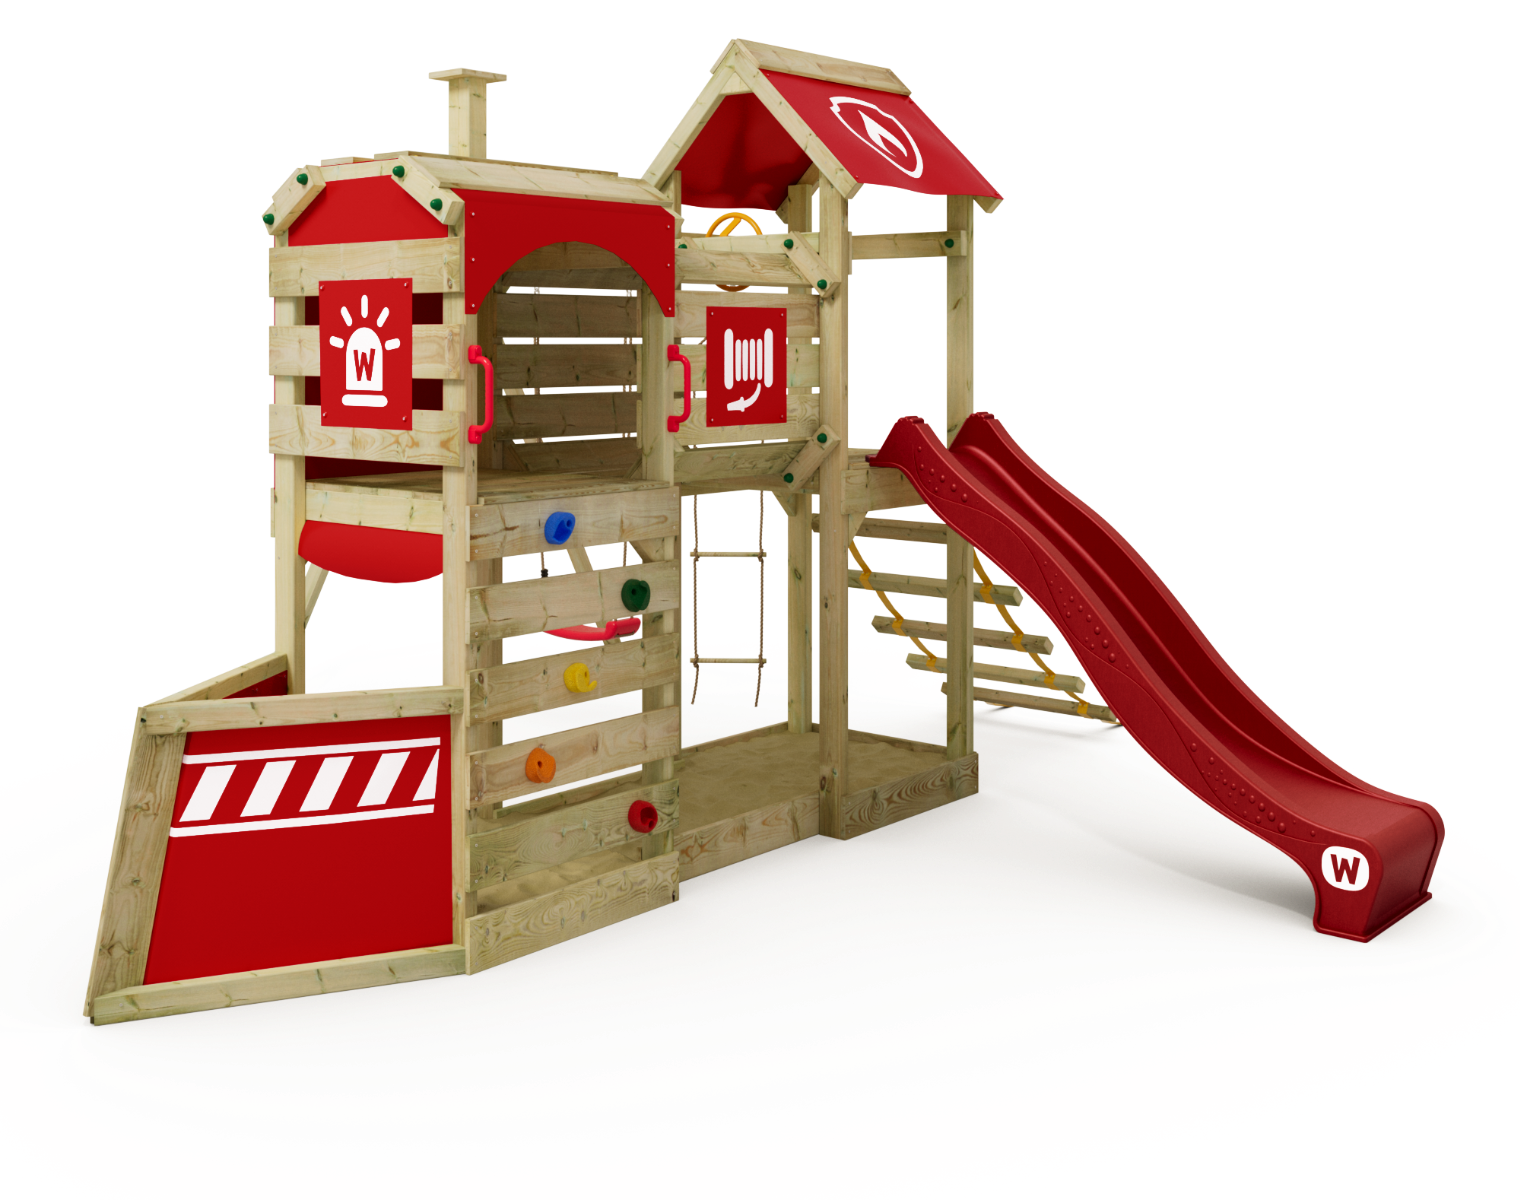 Детски център за игра Wickey SteamFlyer